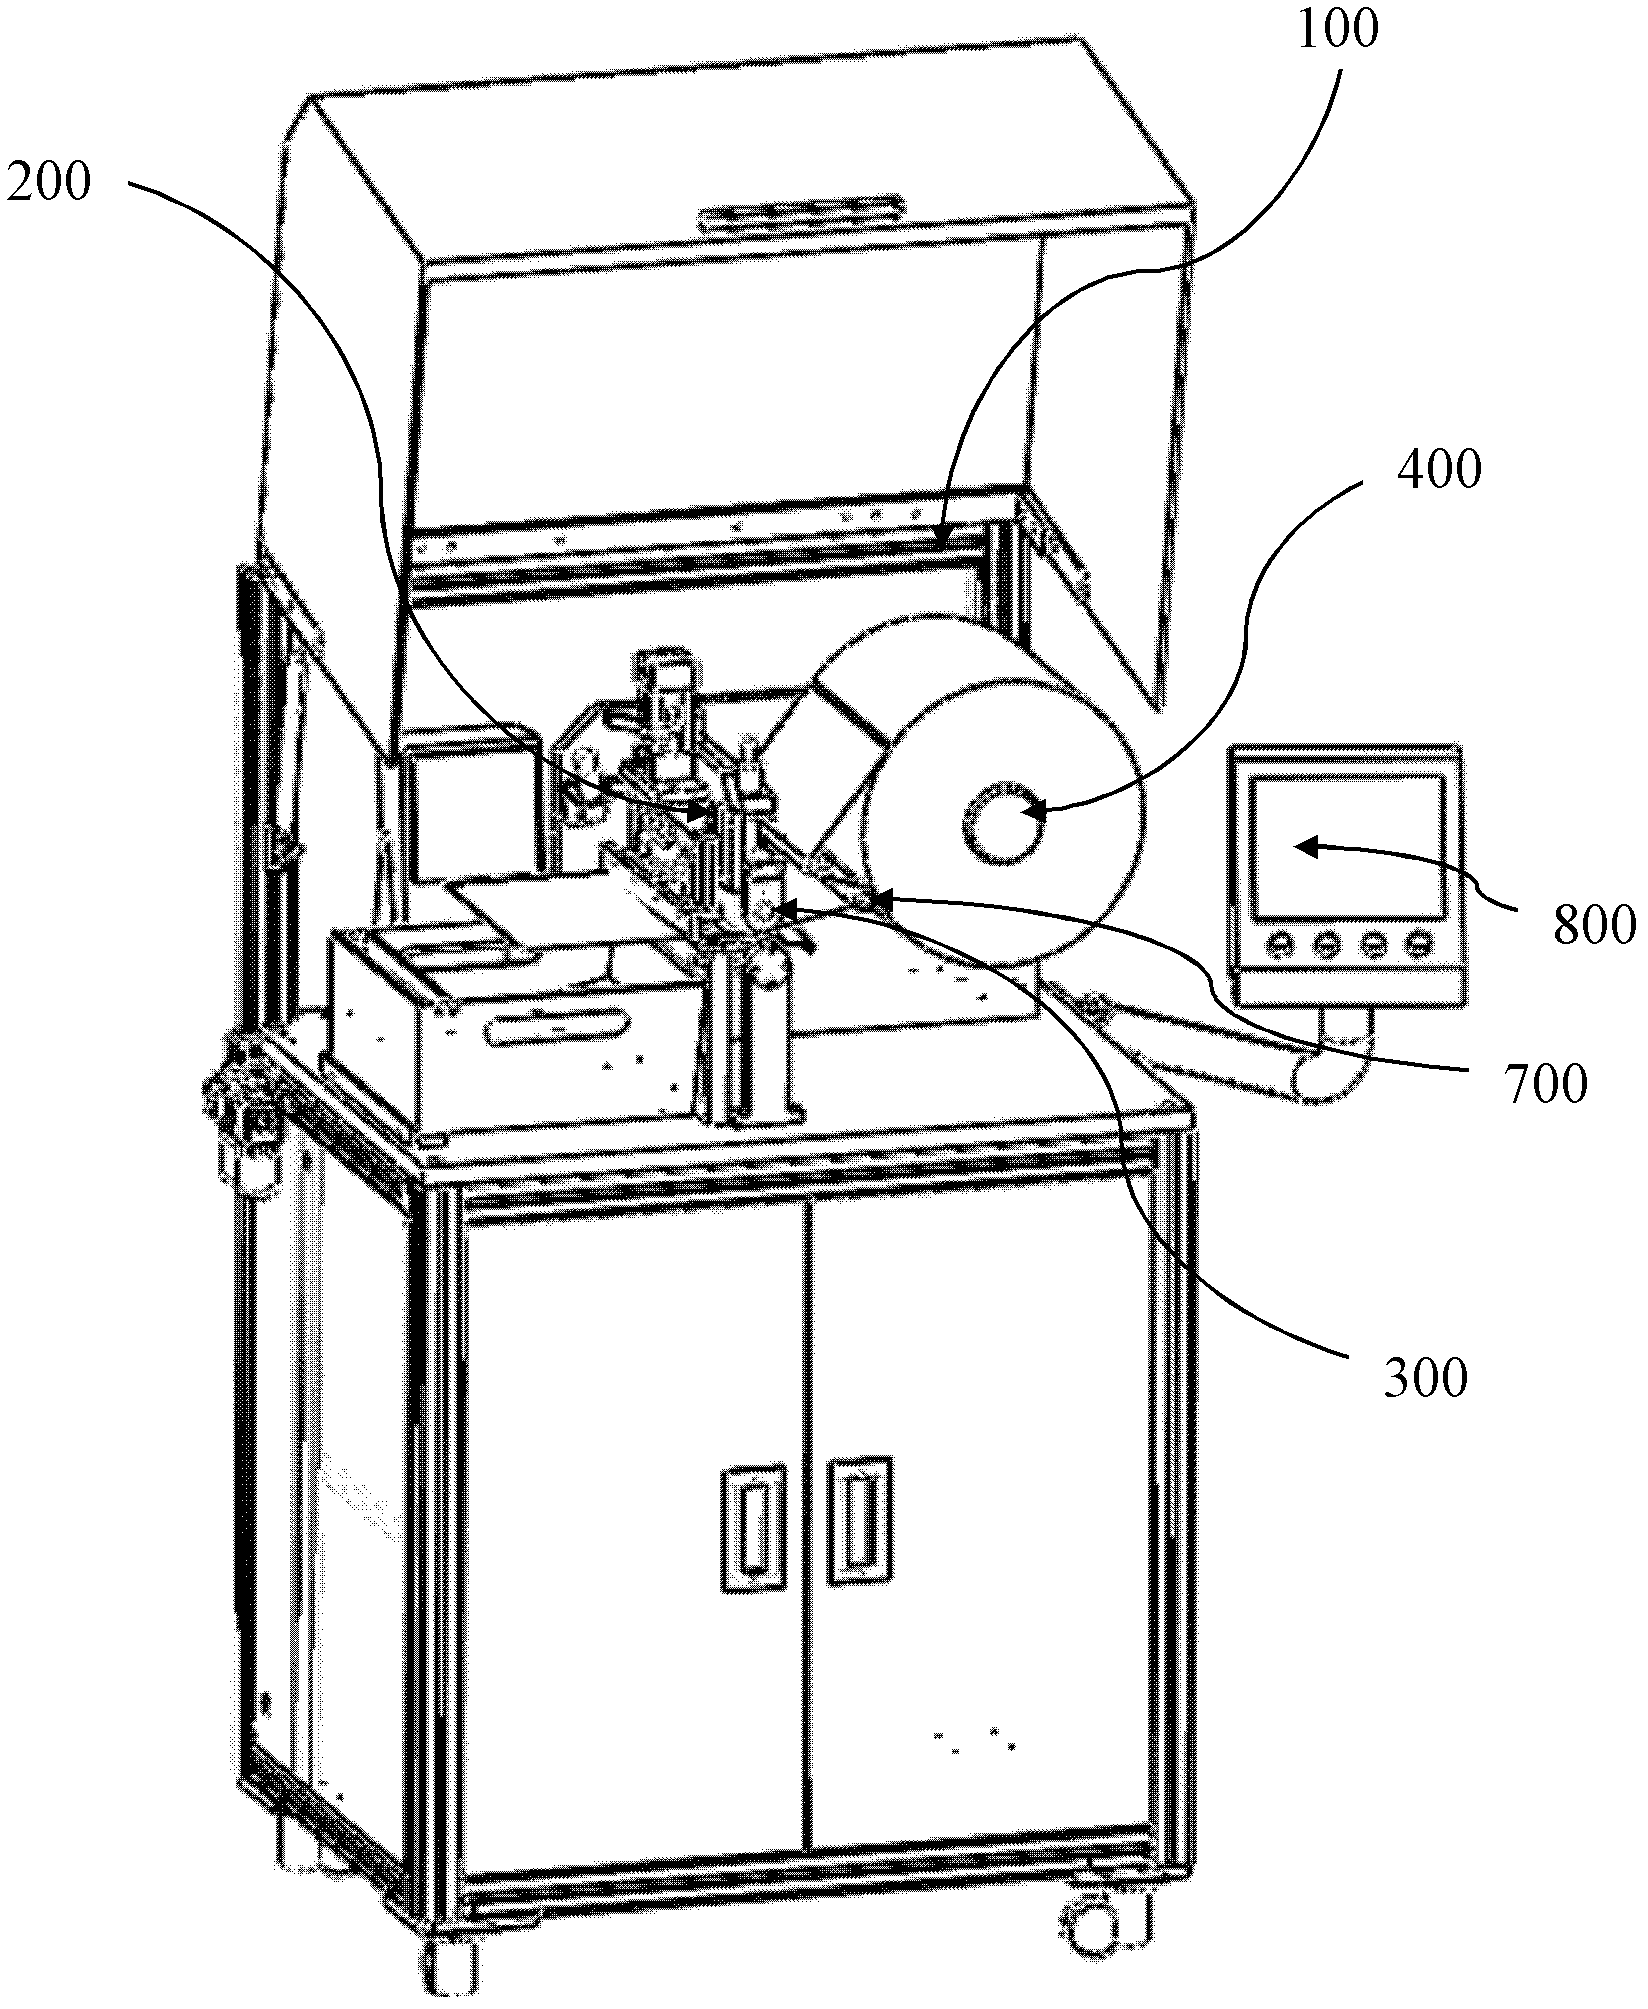 Full-automatic release paper cutting machine